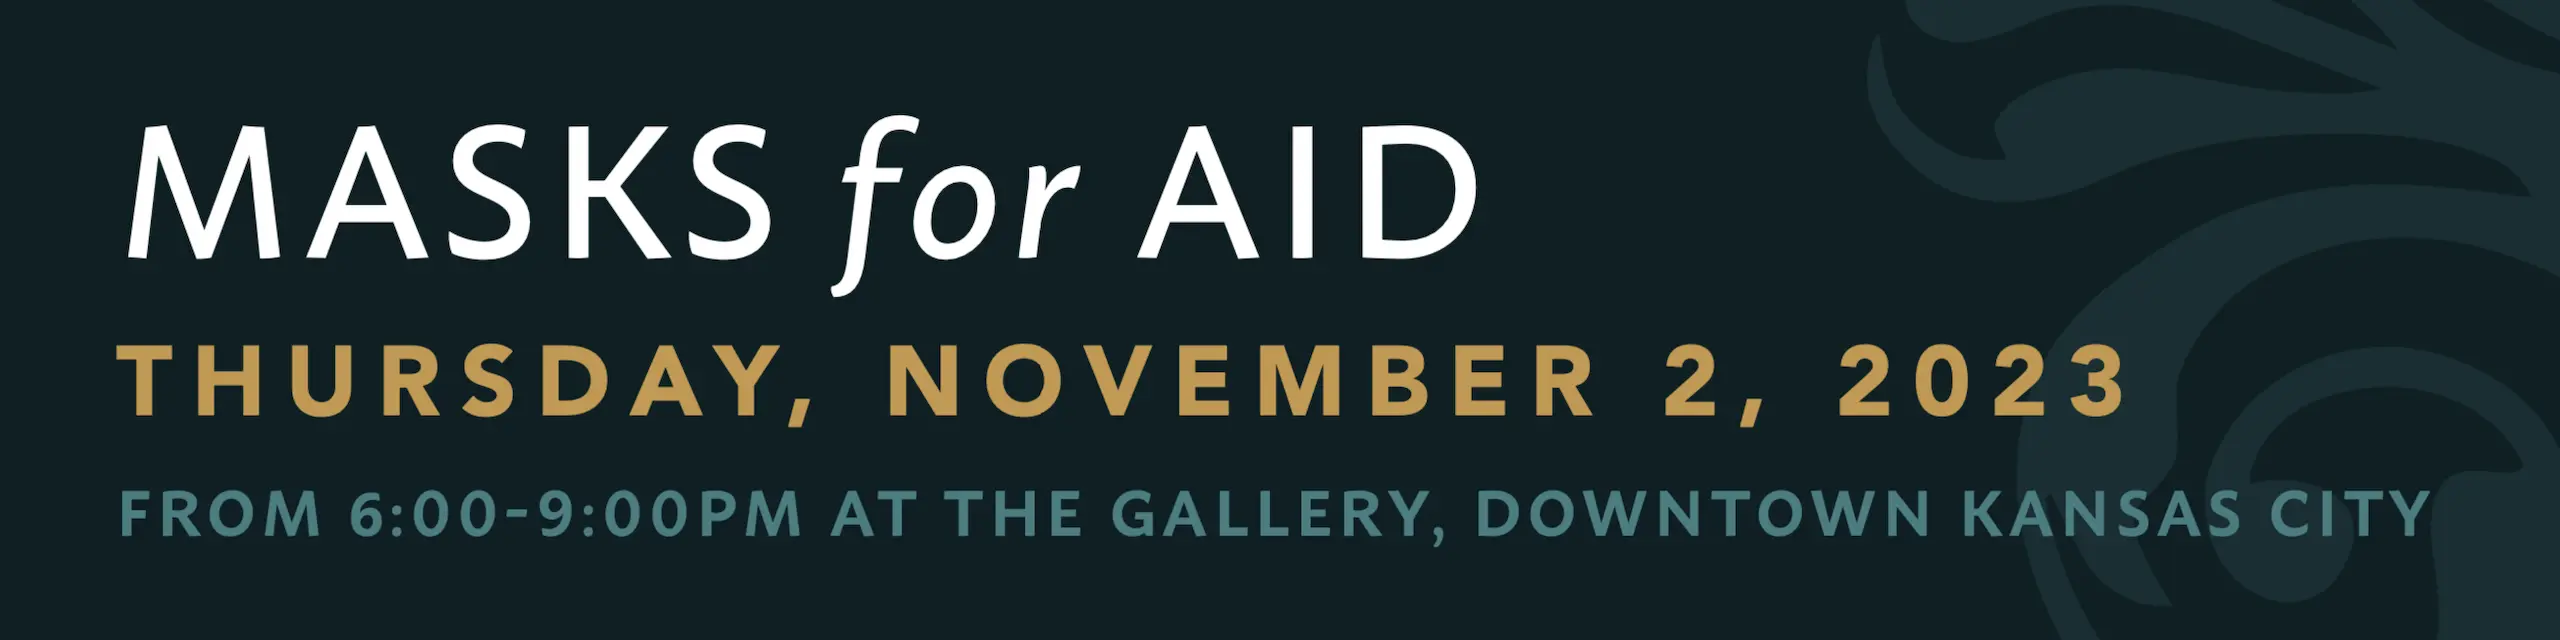 MASKS for AID – Thursday, November 2, 2023